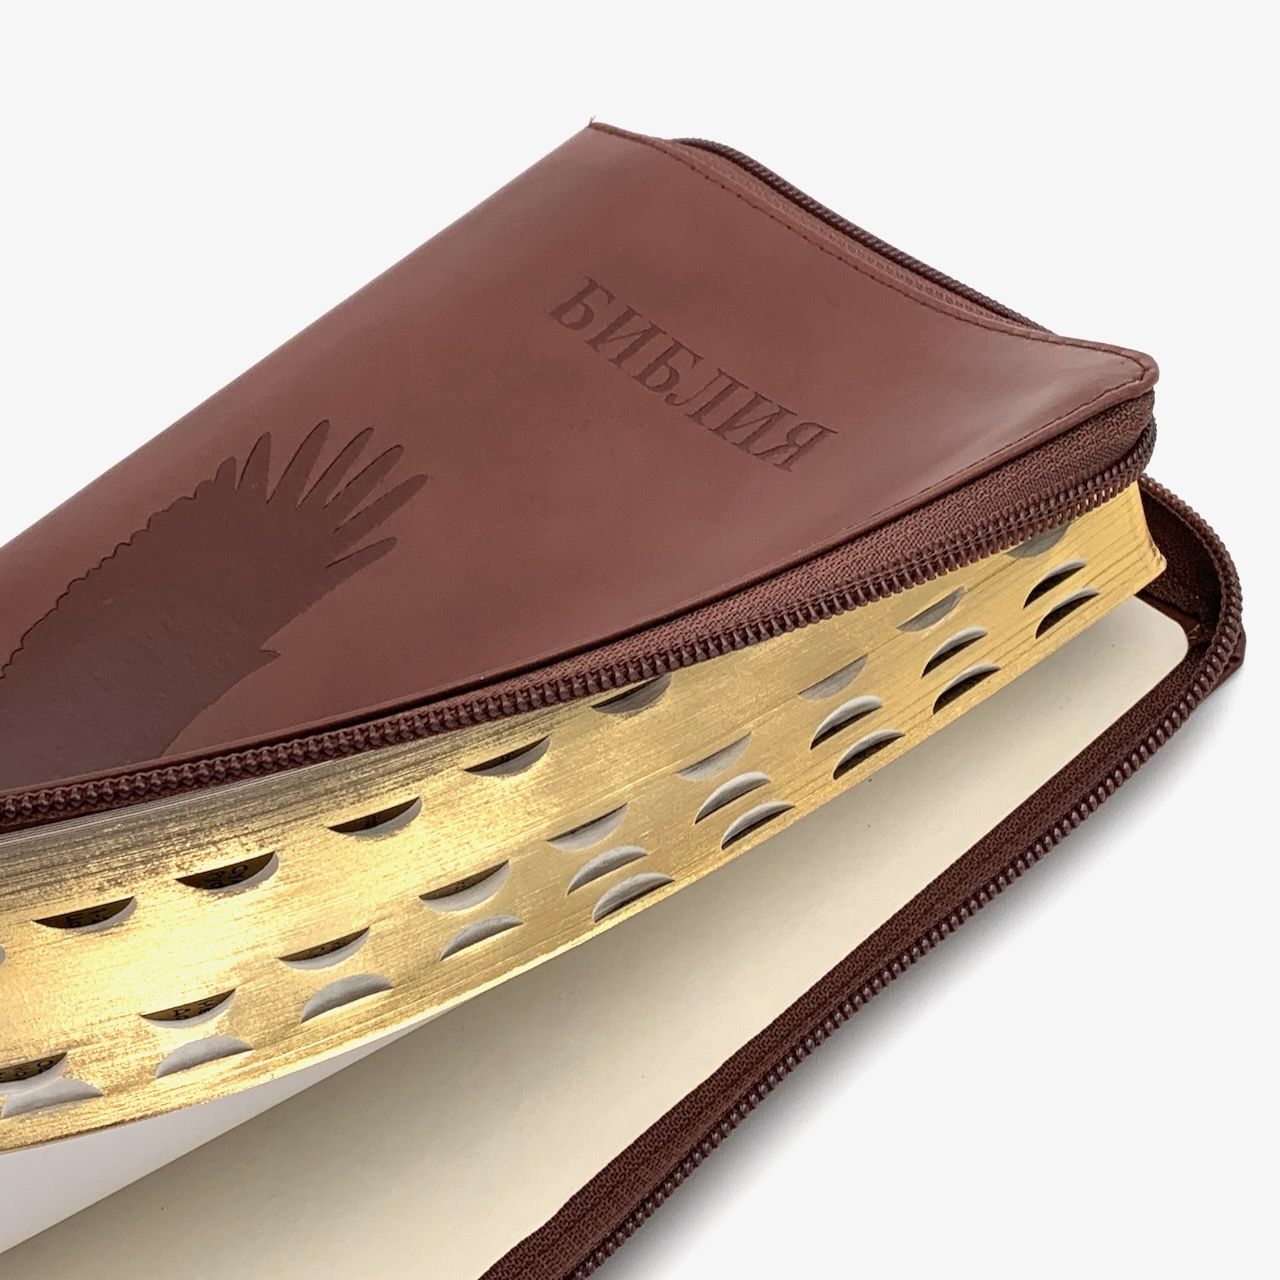 Библия 055zti код E2 дизайн "орел" термо печать, кожаный переплет на молнии с индексами, цвет коричневый, средний формат, 143*220 мм